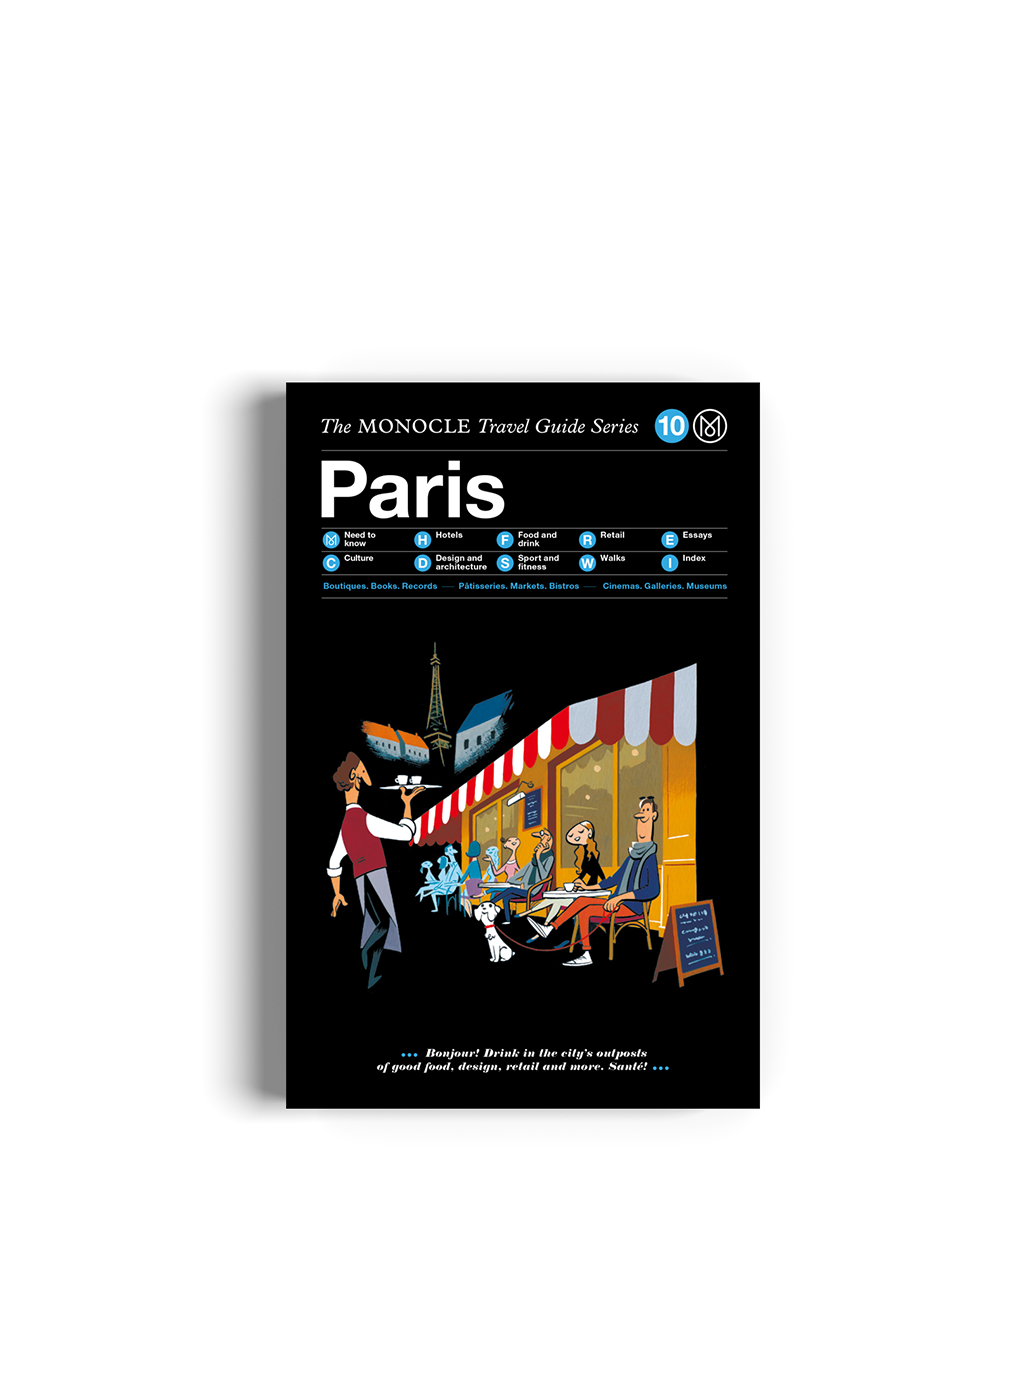 PARIS : LA SÉRIE DE GUIDES DE VOYAGE MONOCLE